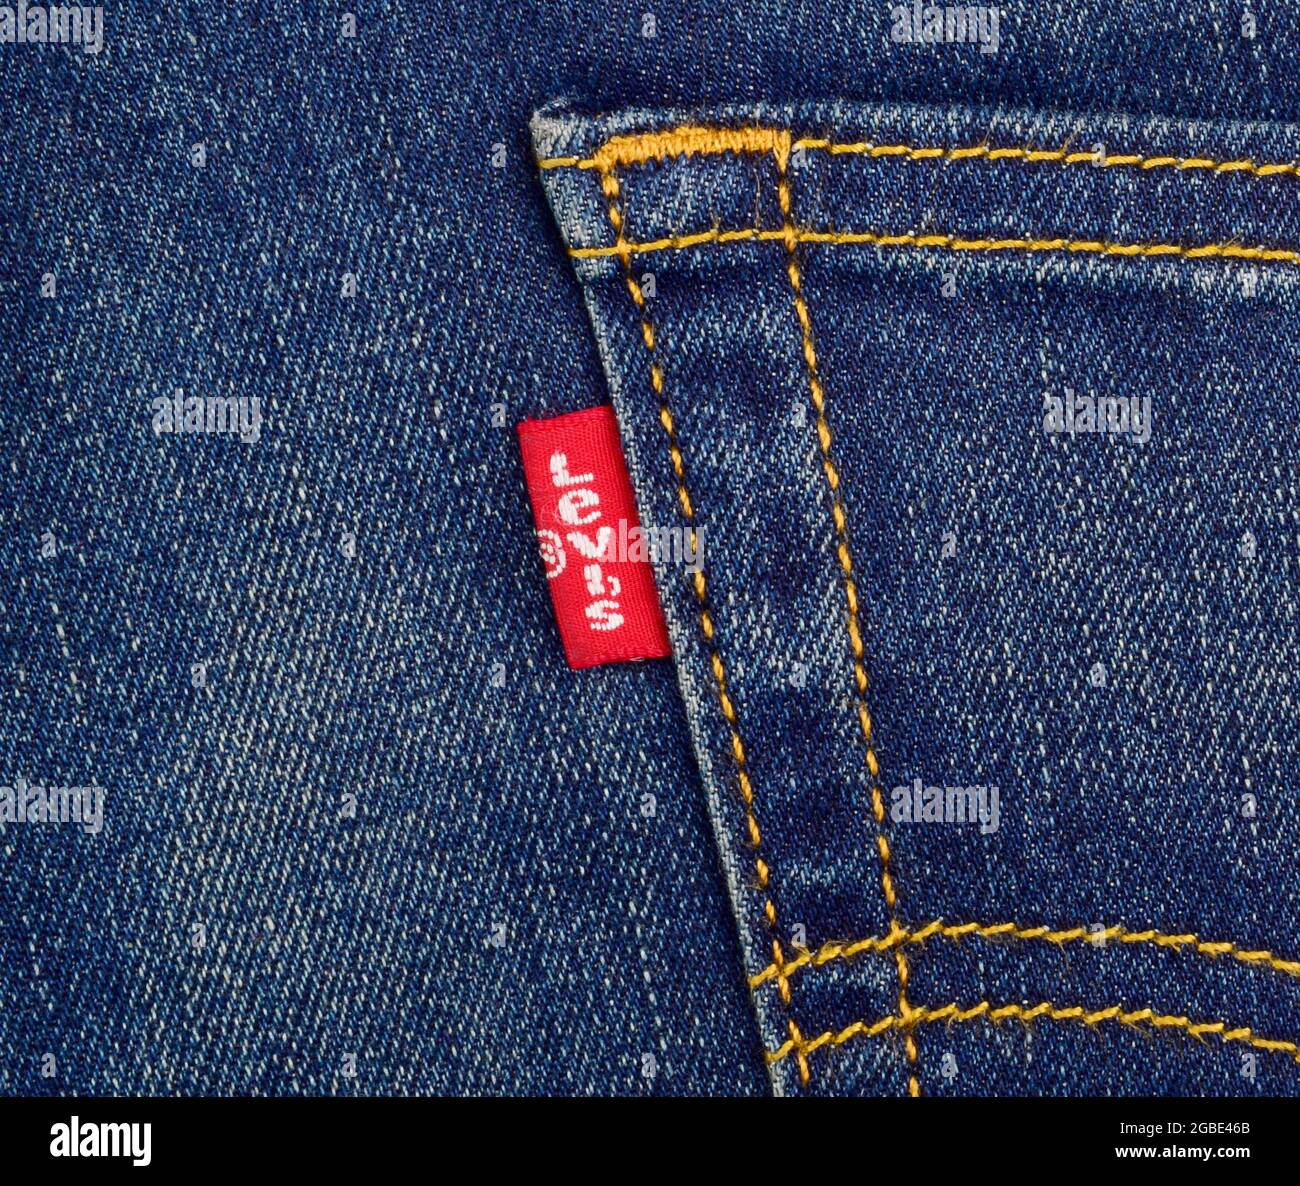 Levis jeans label close up Banque de photographies et d'images à haute  résolution - Alamy